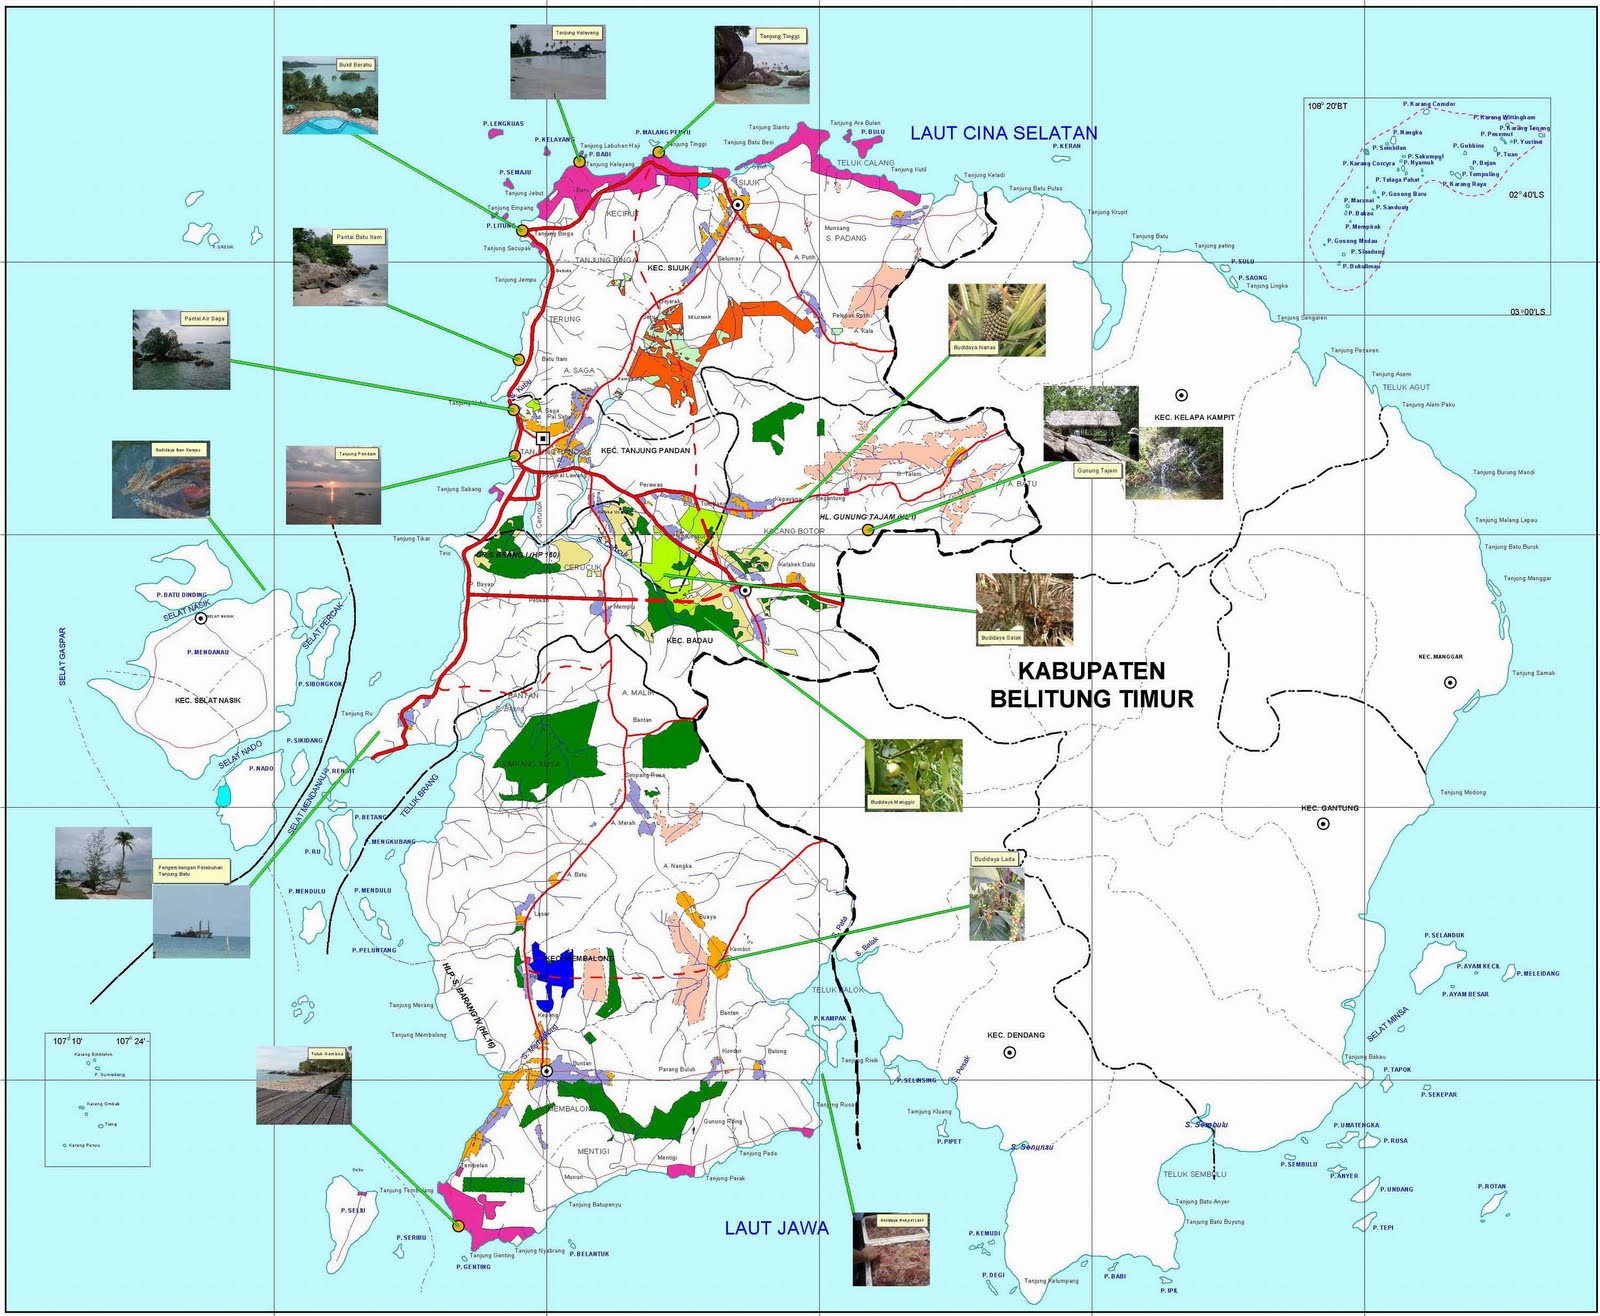 > Peta Lengkap Indonesia Peta Wisata Kabupaten Belitung